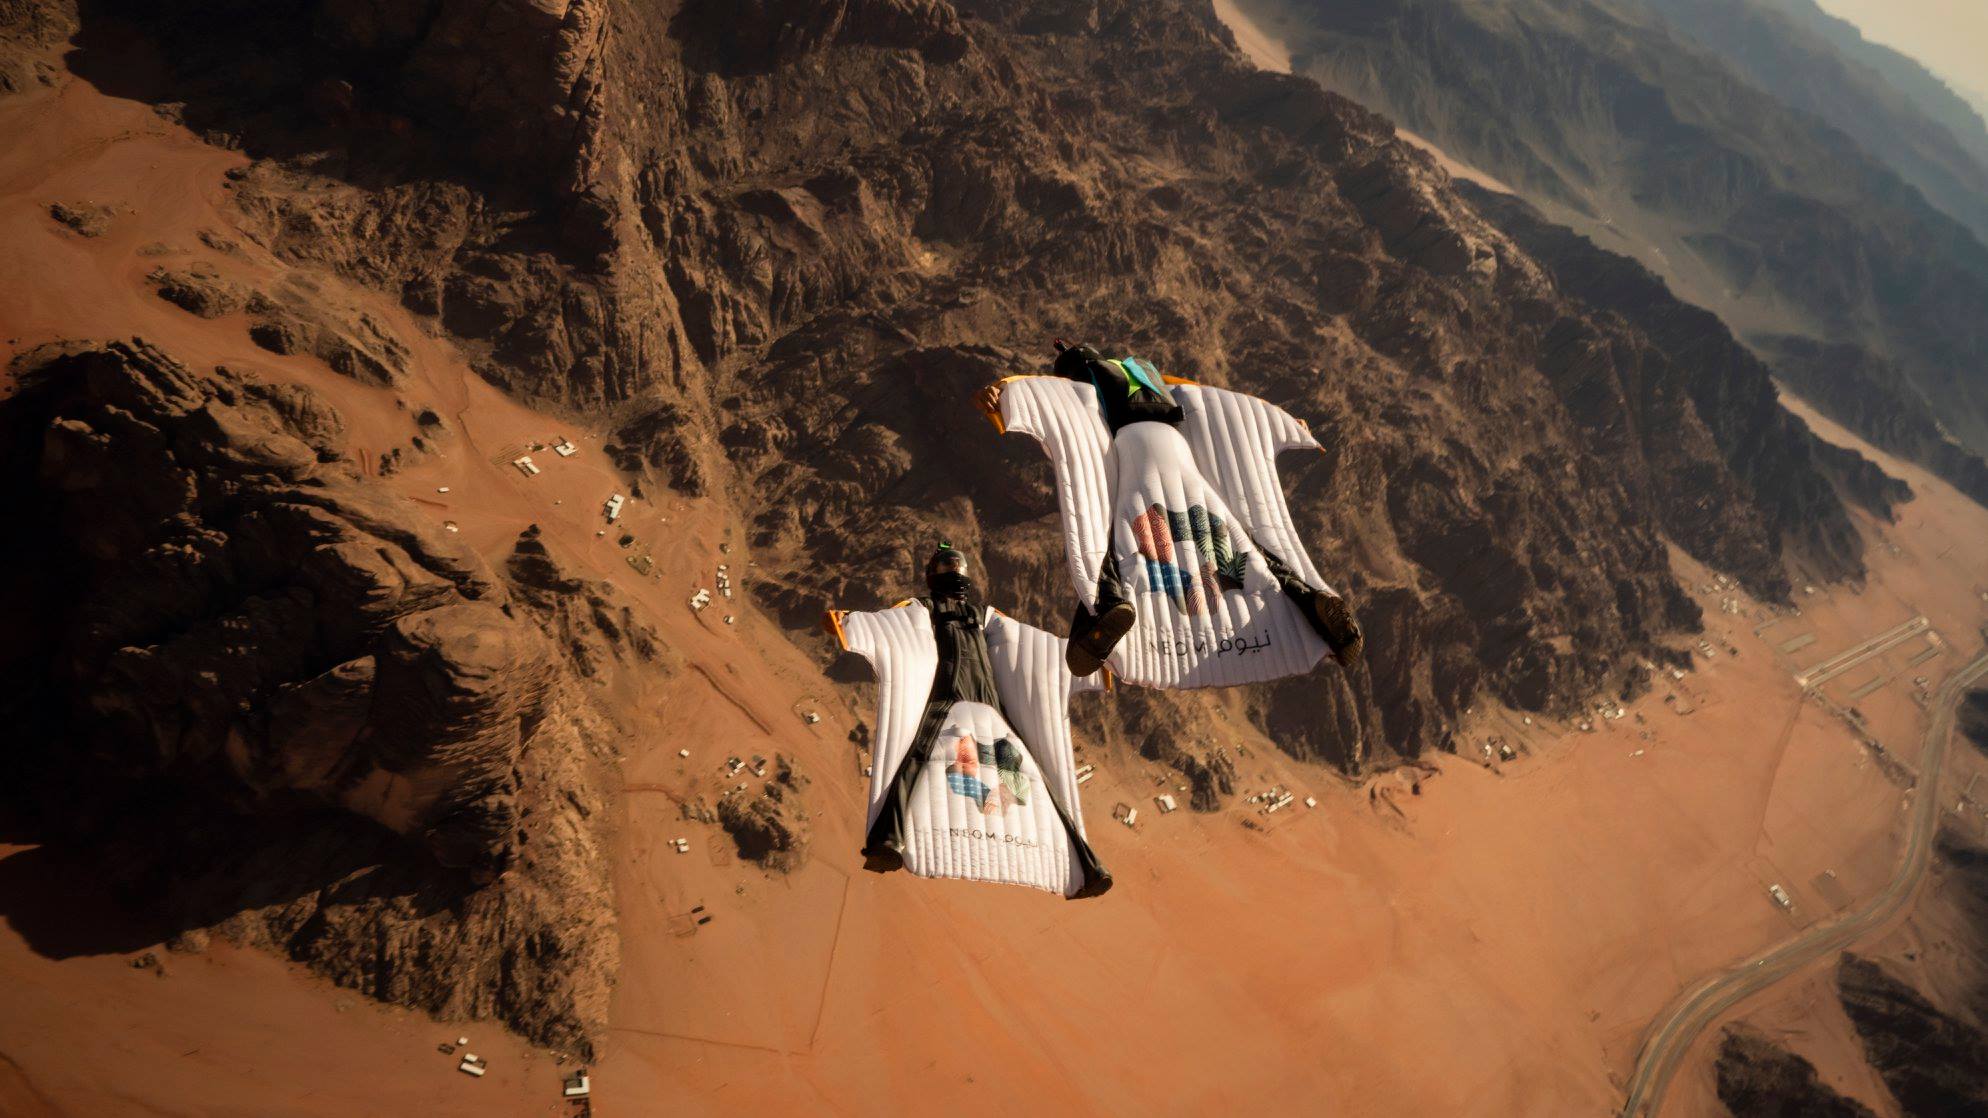 Saudijci se već sada trude privući fokus medija i svijeta na Neom, pa su tako prošle godine na mjestu gdje će biti izgrađen grad organizirali natjecanje u ekstremnim sportovima, poput skakanja Wingsuitom.